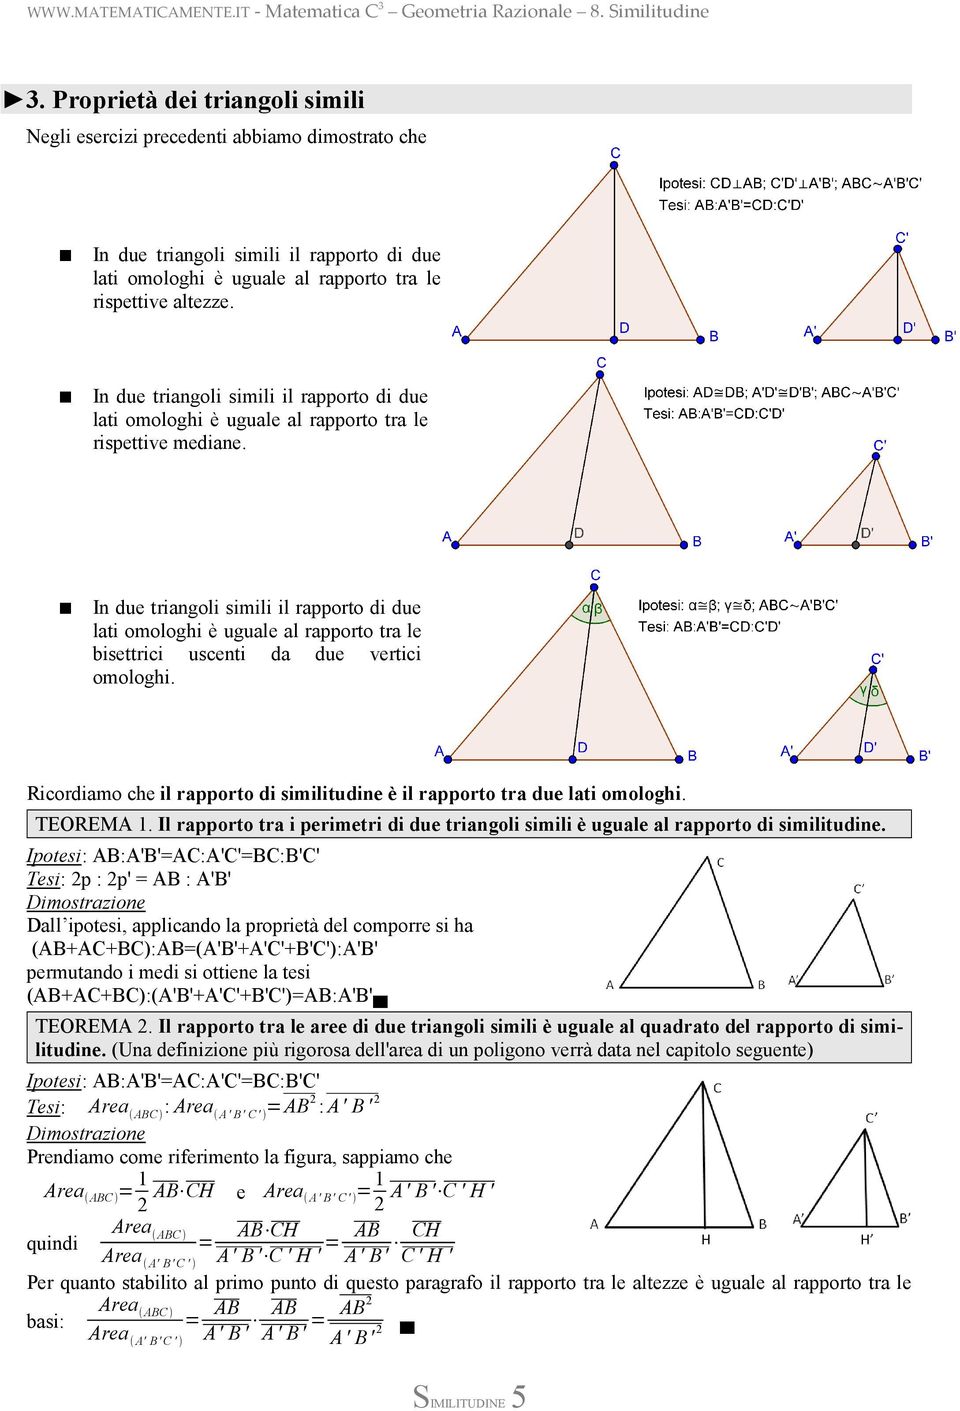 In due triangoli simili il rapporto di due lati omologhi è uguale al rapporto tra le bisettrici uscenti da due vertici omologhi.